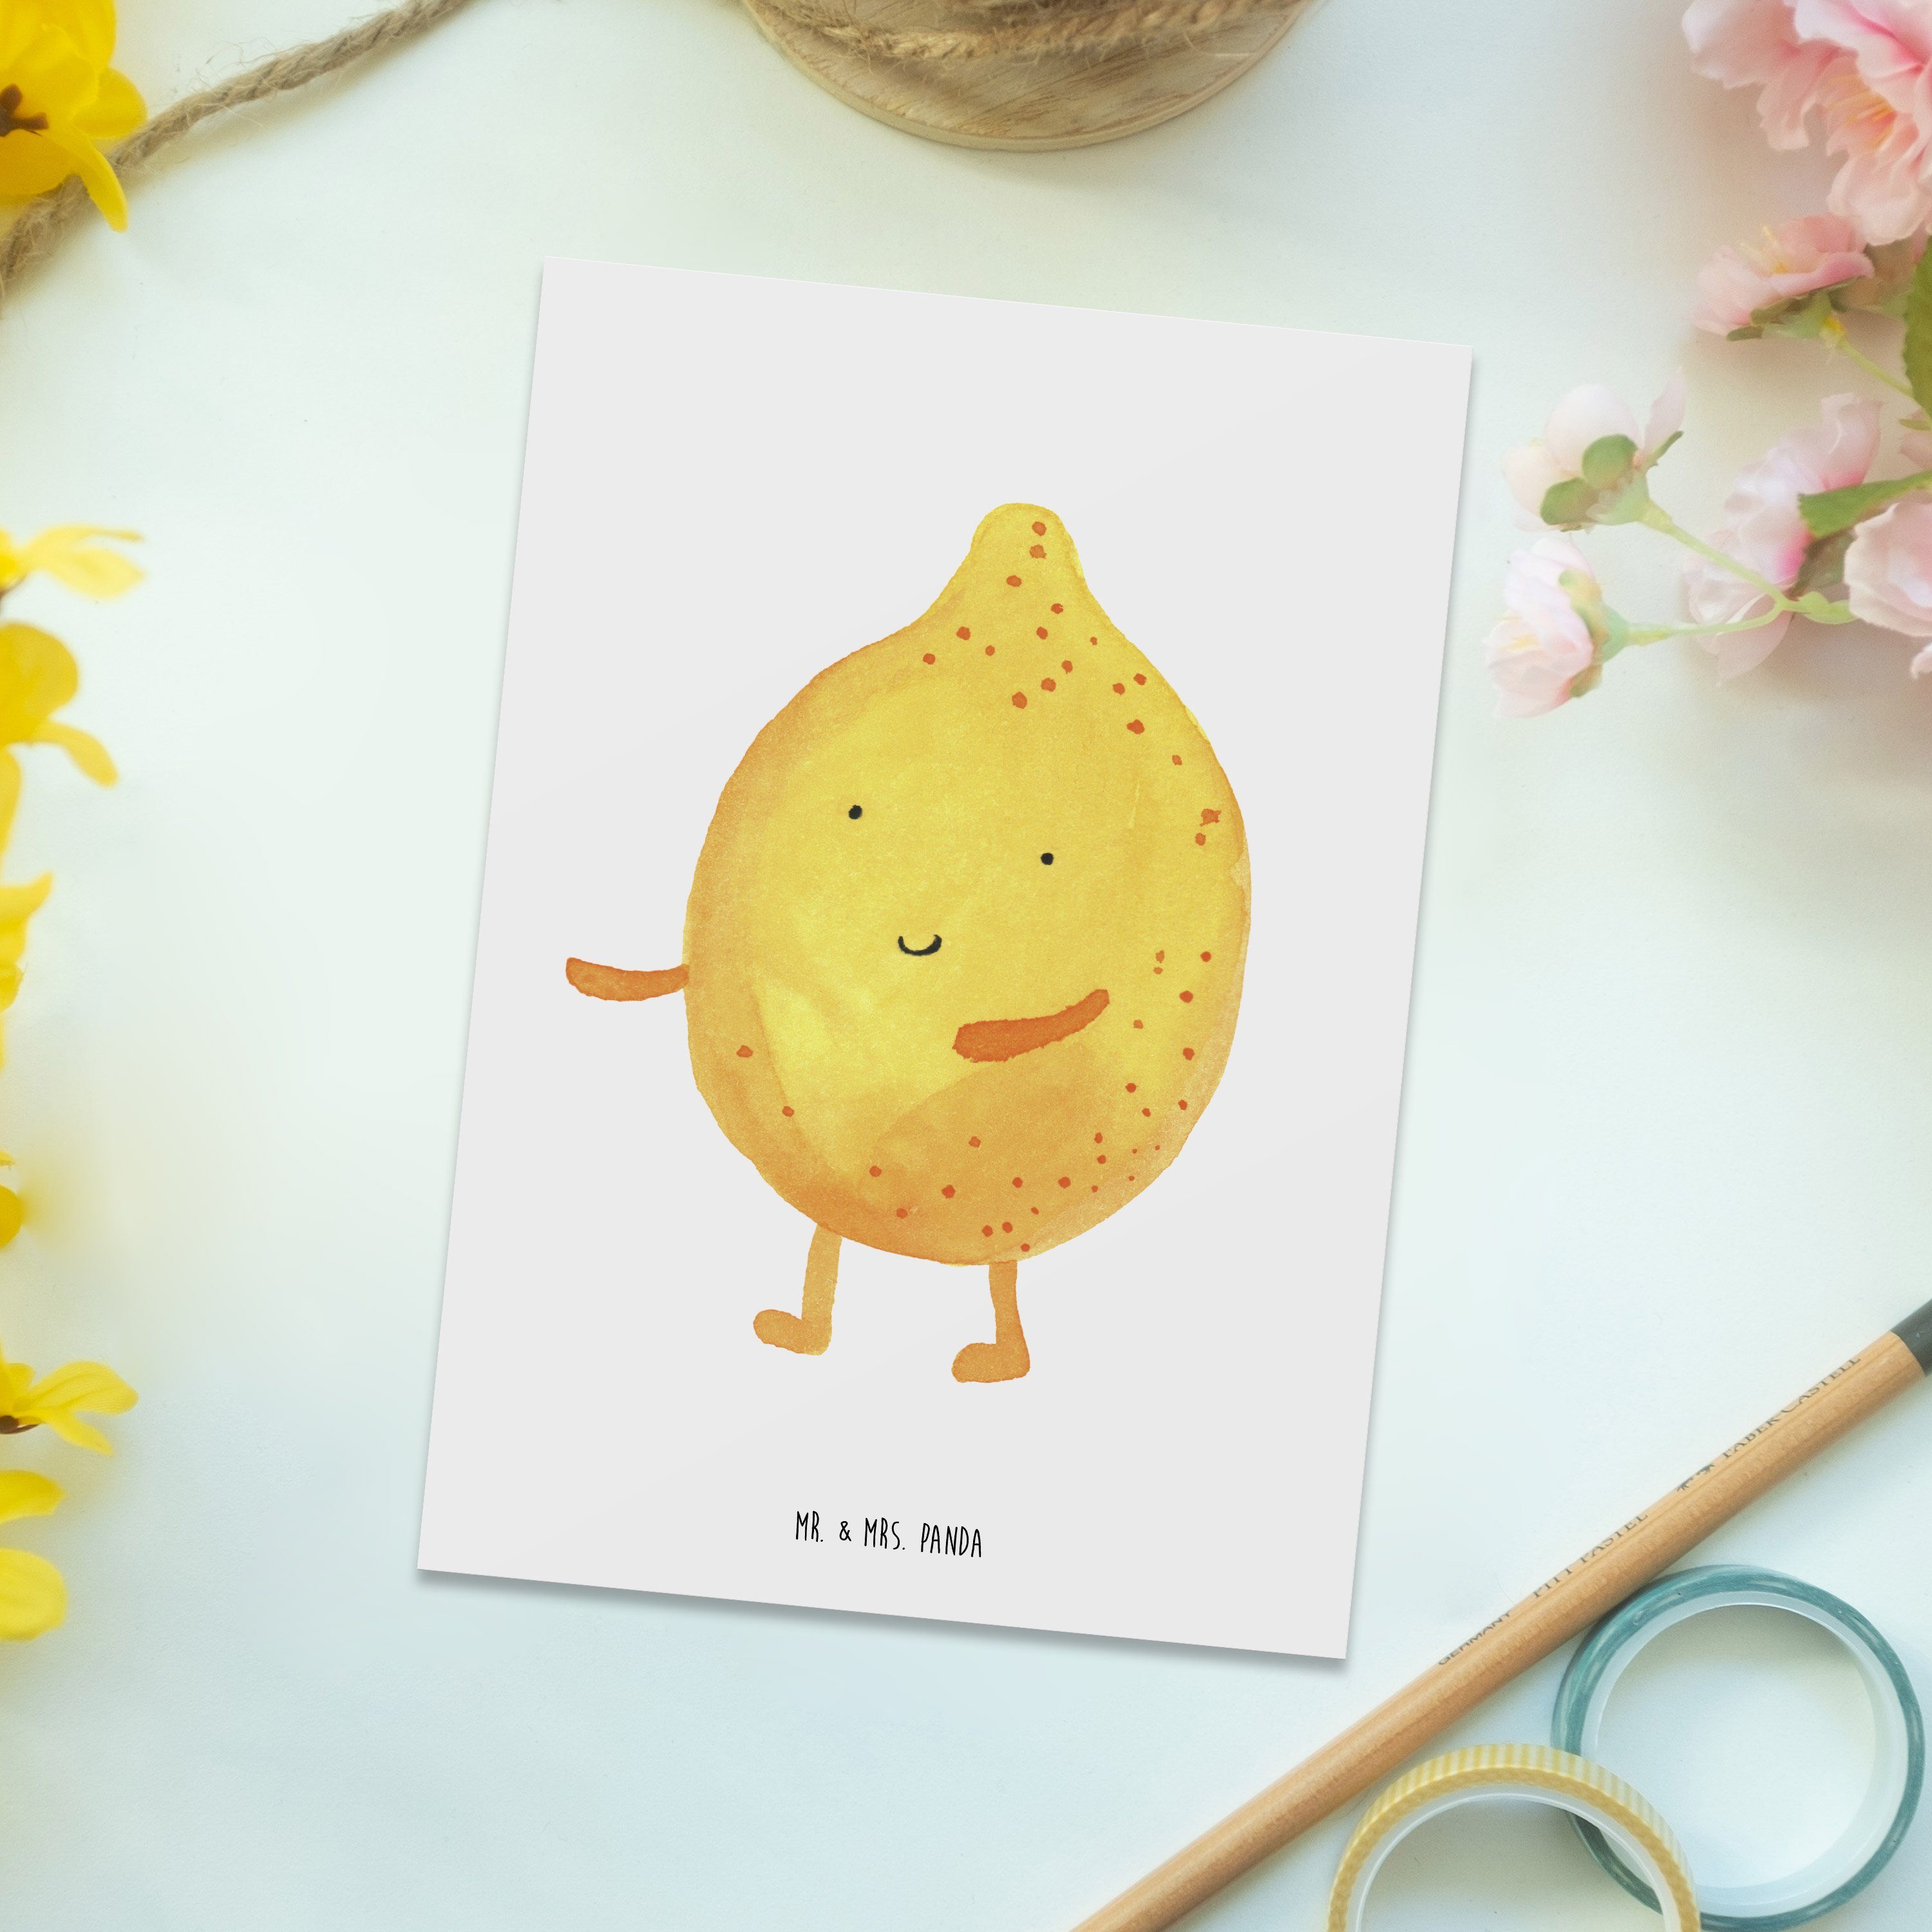 Mr. & Mrs. Panda Postkarte BestFriends-Lemon Grußkarte, Weiß Laune, Gute - Einladung Geschenk, 